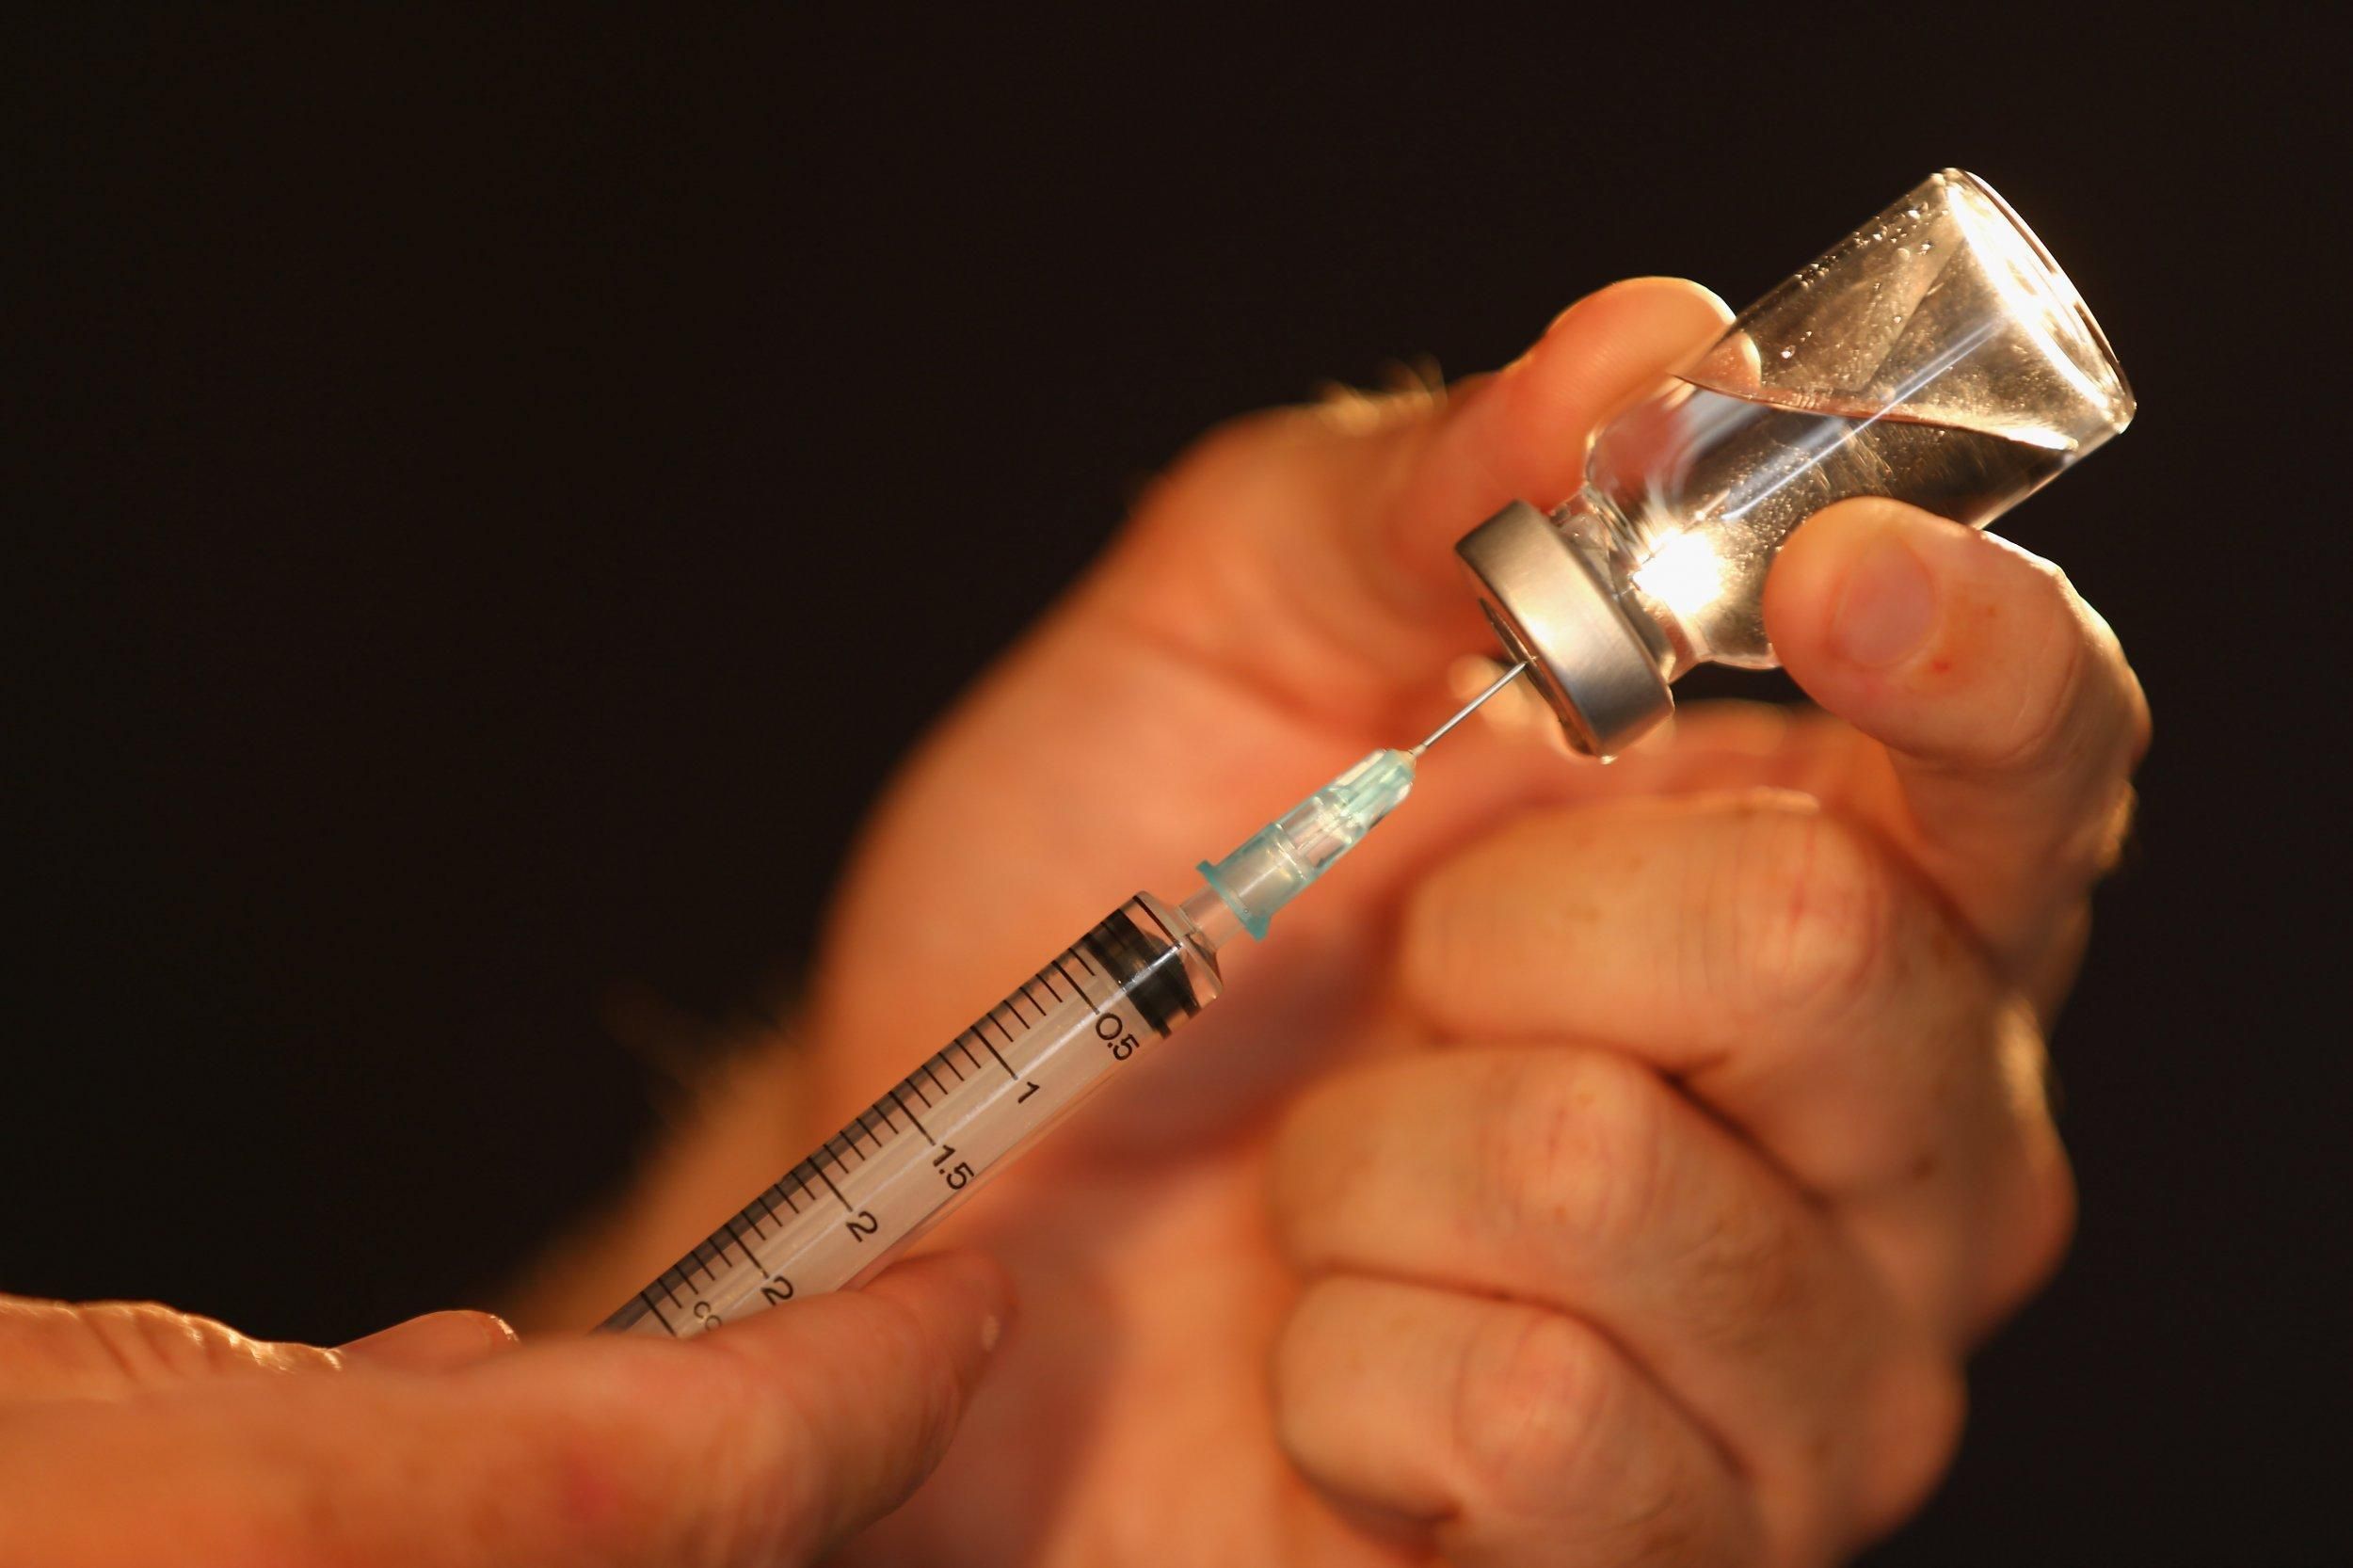 Щонайменше 20% населення України отримають вакцину проти COVID-19, – Ляшко